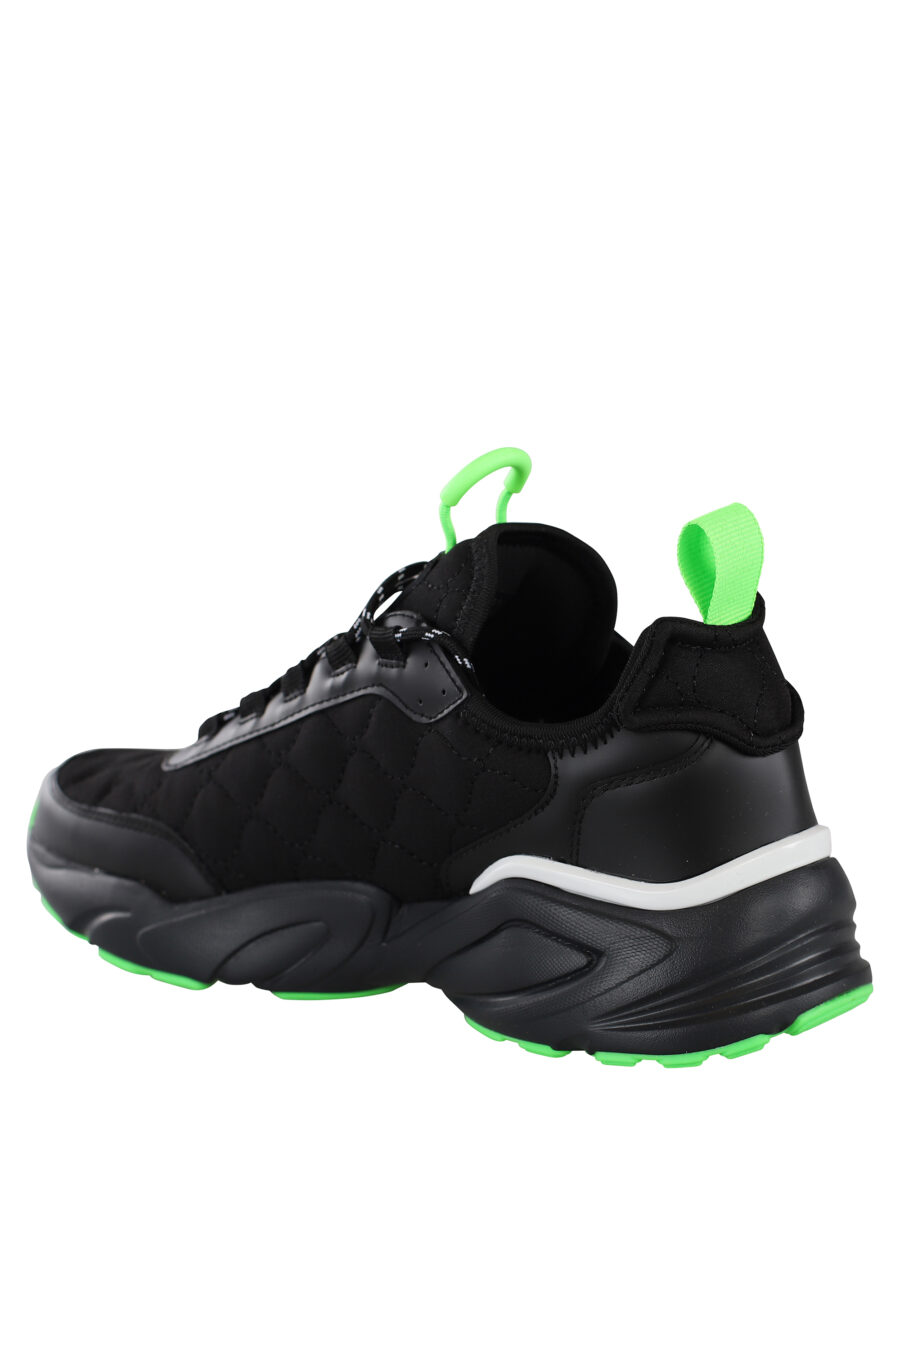 Zapatillas negras con detalles verdes y maxilogo blanco - IMG 6894